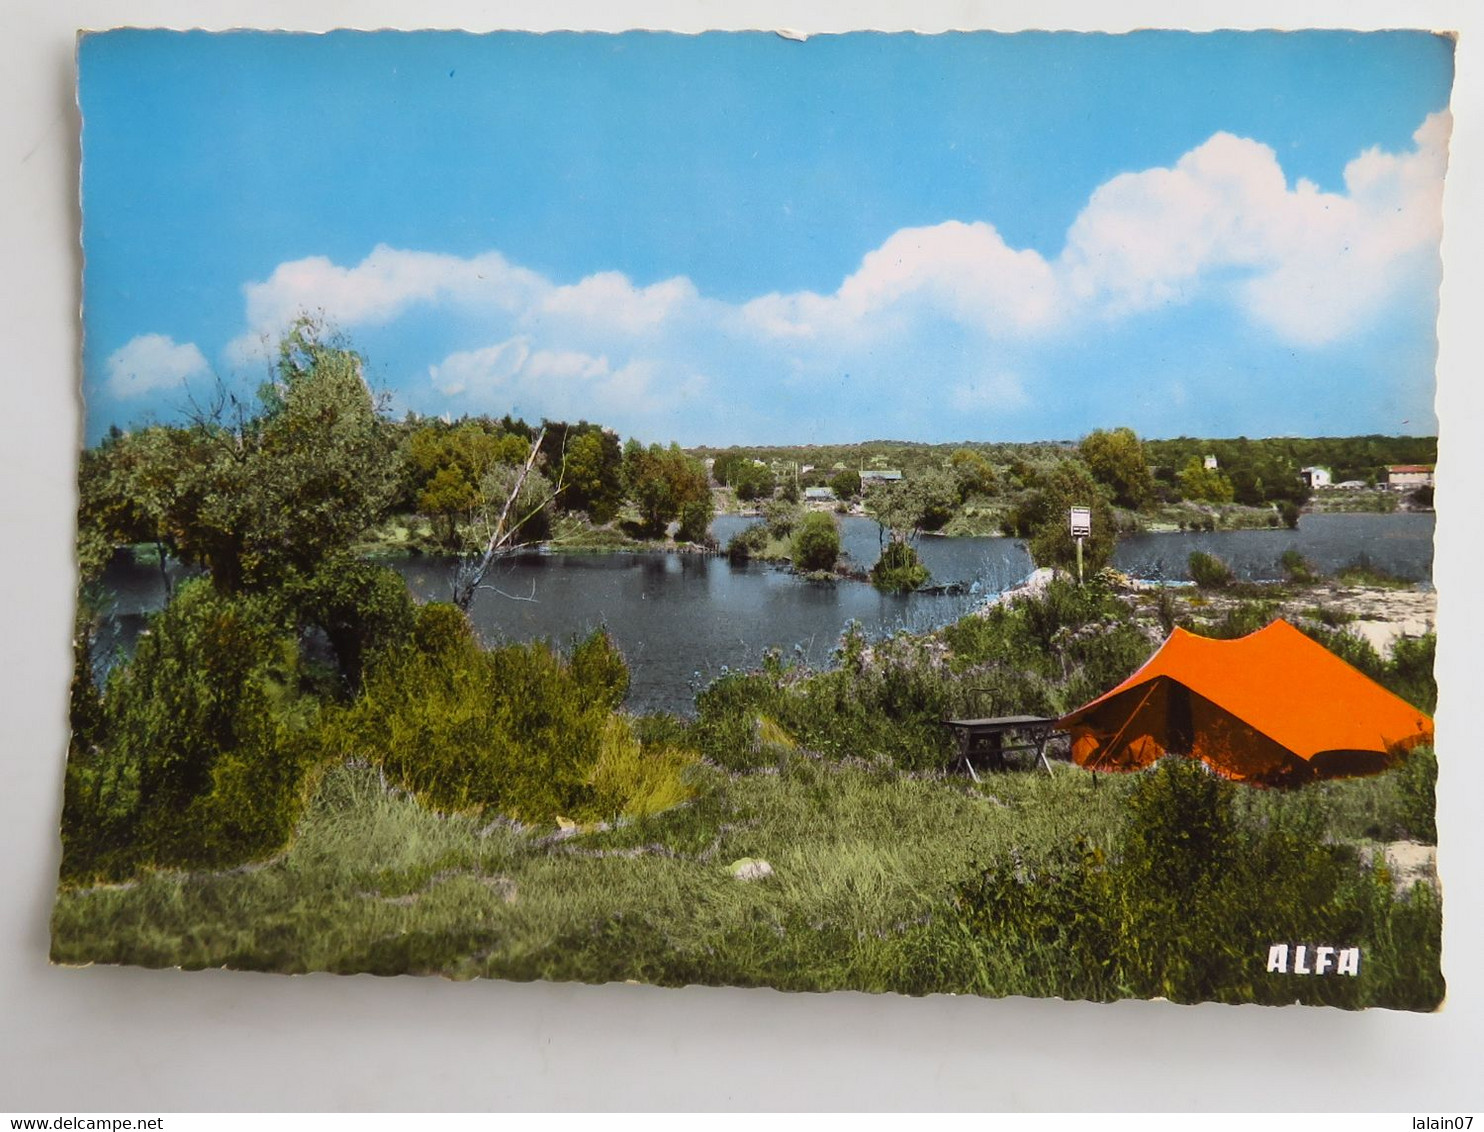 Carte Postale : 91 GRIGNY : Le Camping, Tente Orange, Timbre En 1978 - Grigny